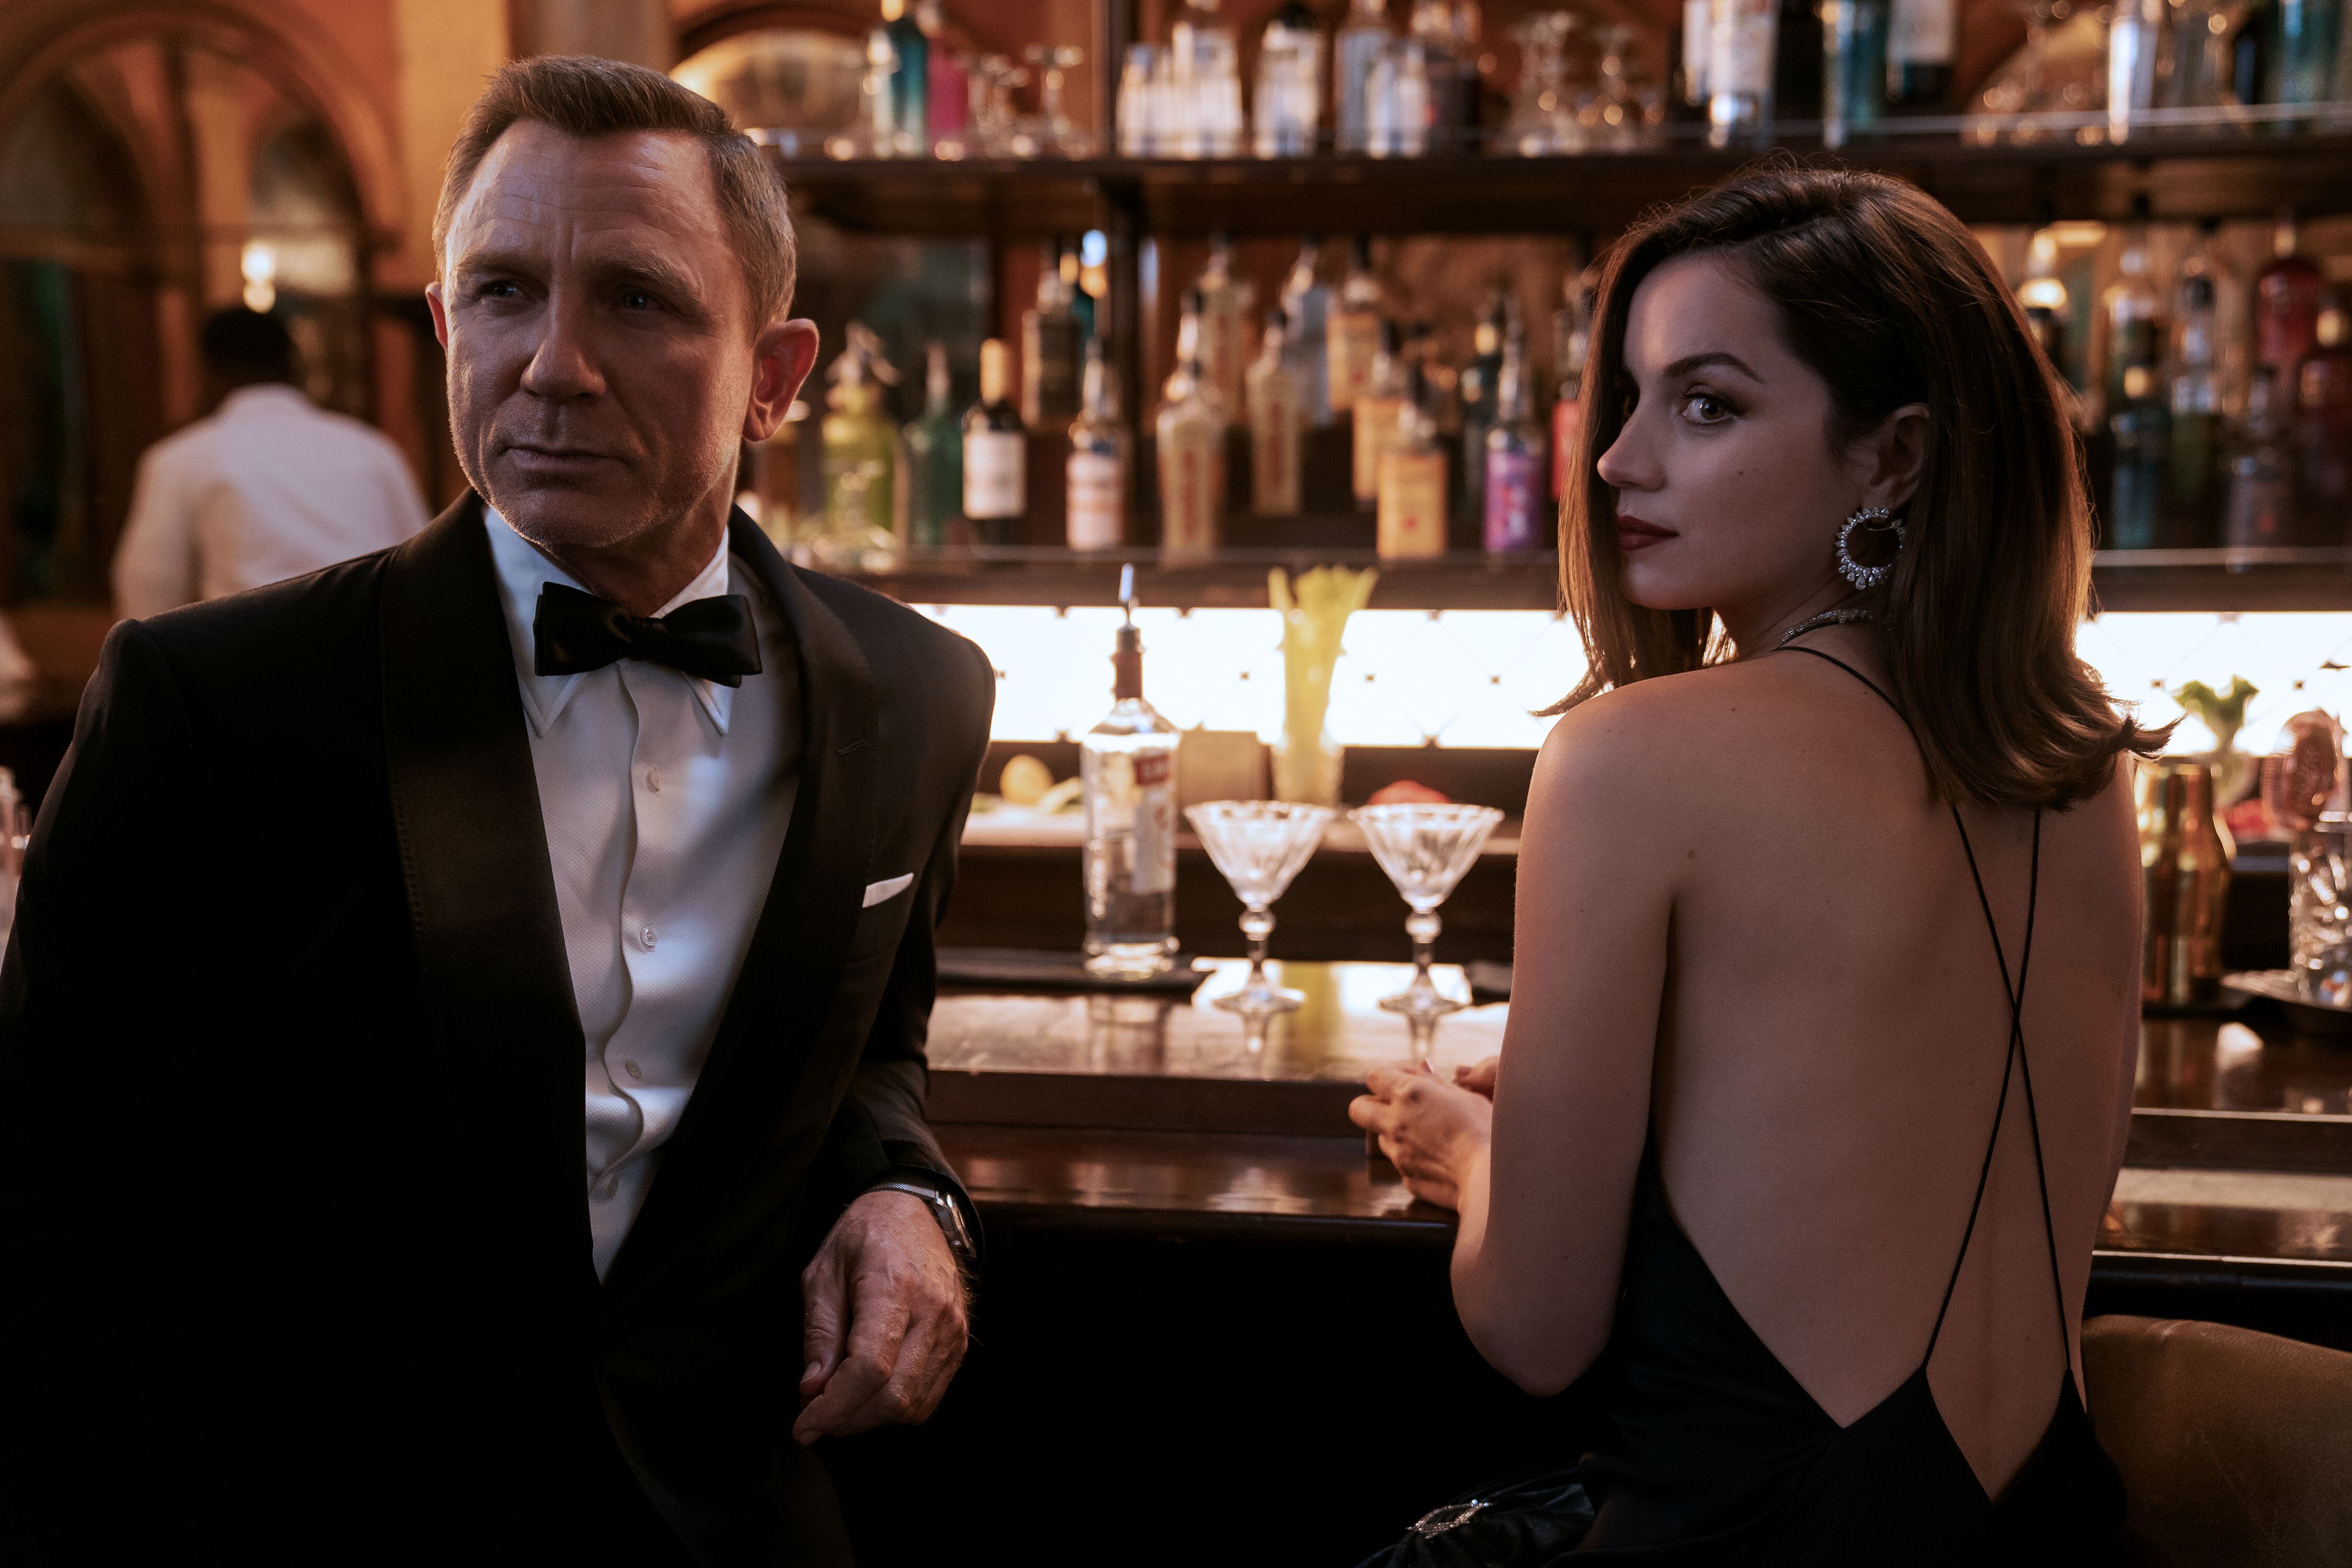 Daniel Craig es el último actor que ha interpretado a James Bond en el cine. Aquí en una escena de la película 'Sin tiempo para morir', acompañado por la actriz Ana de Armas). Foto: MGM/Nicola Dove para LN.